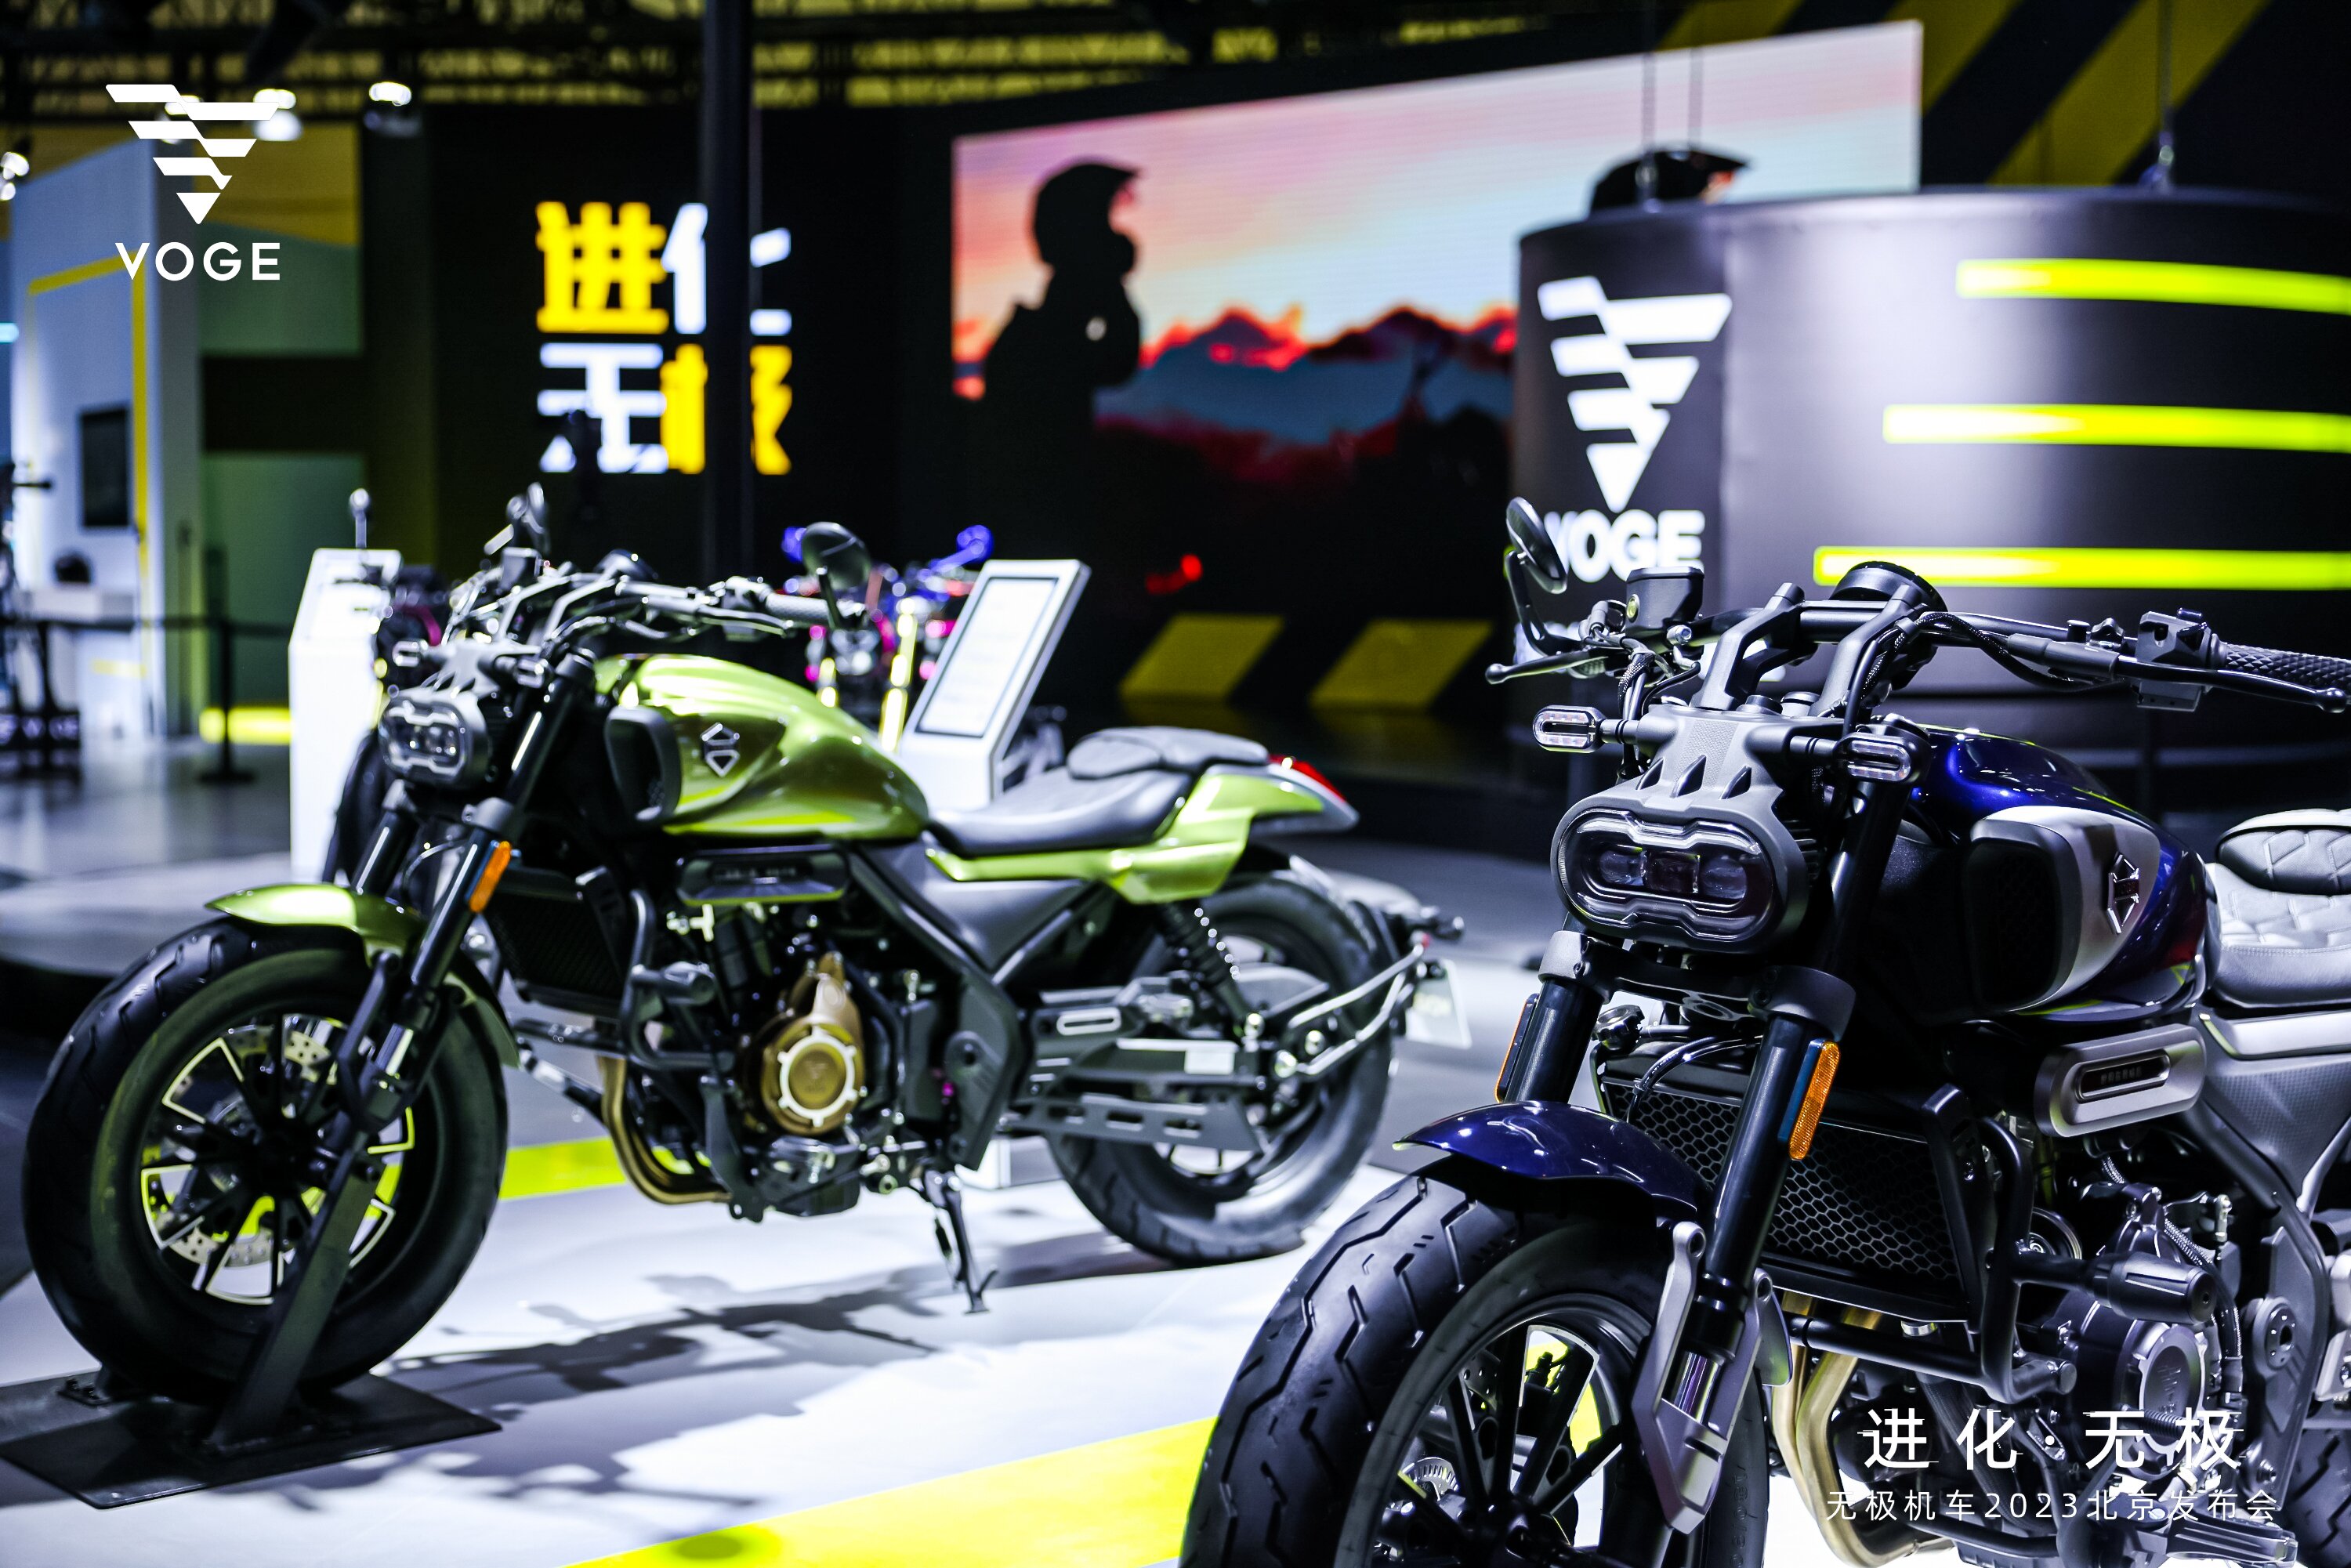 今年的北京国际摩托车展览延续上届的良好势头,数百家企业亮相展会